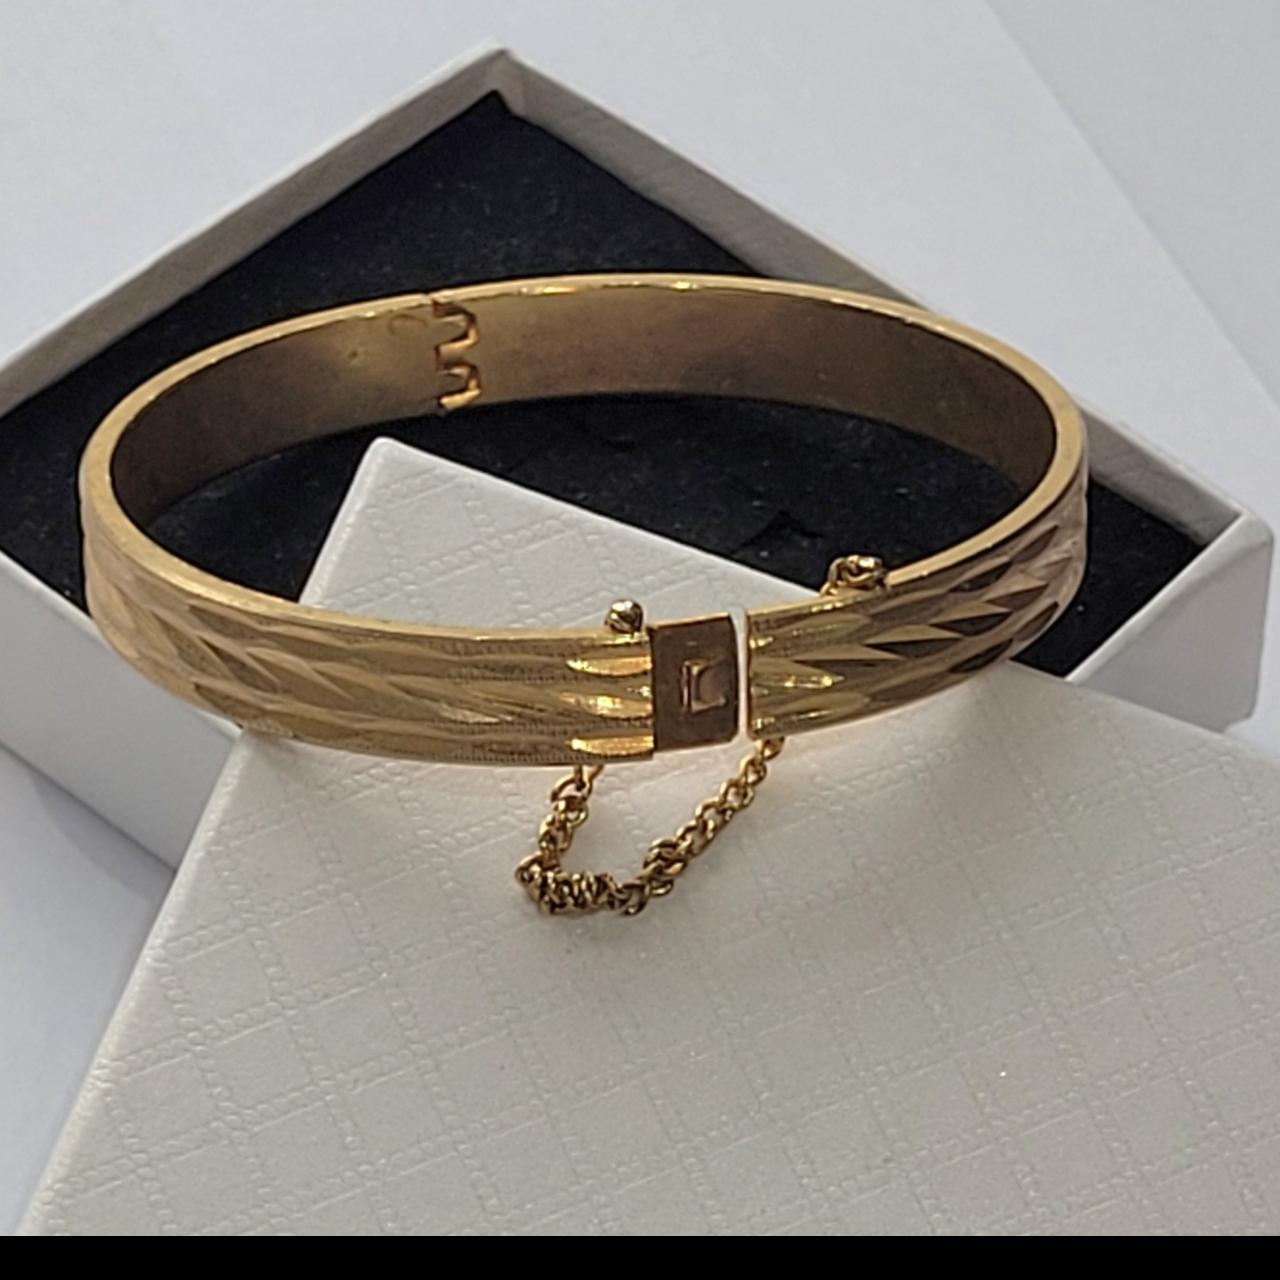 Beautiful Gold plated bangle bracelet - Vintage -... - Depop